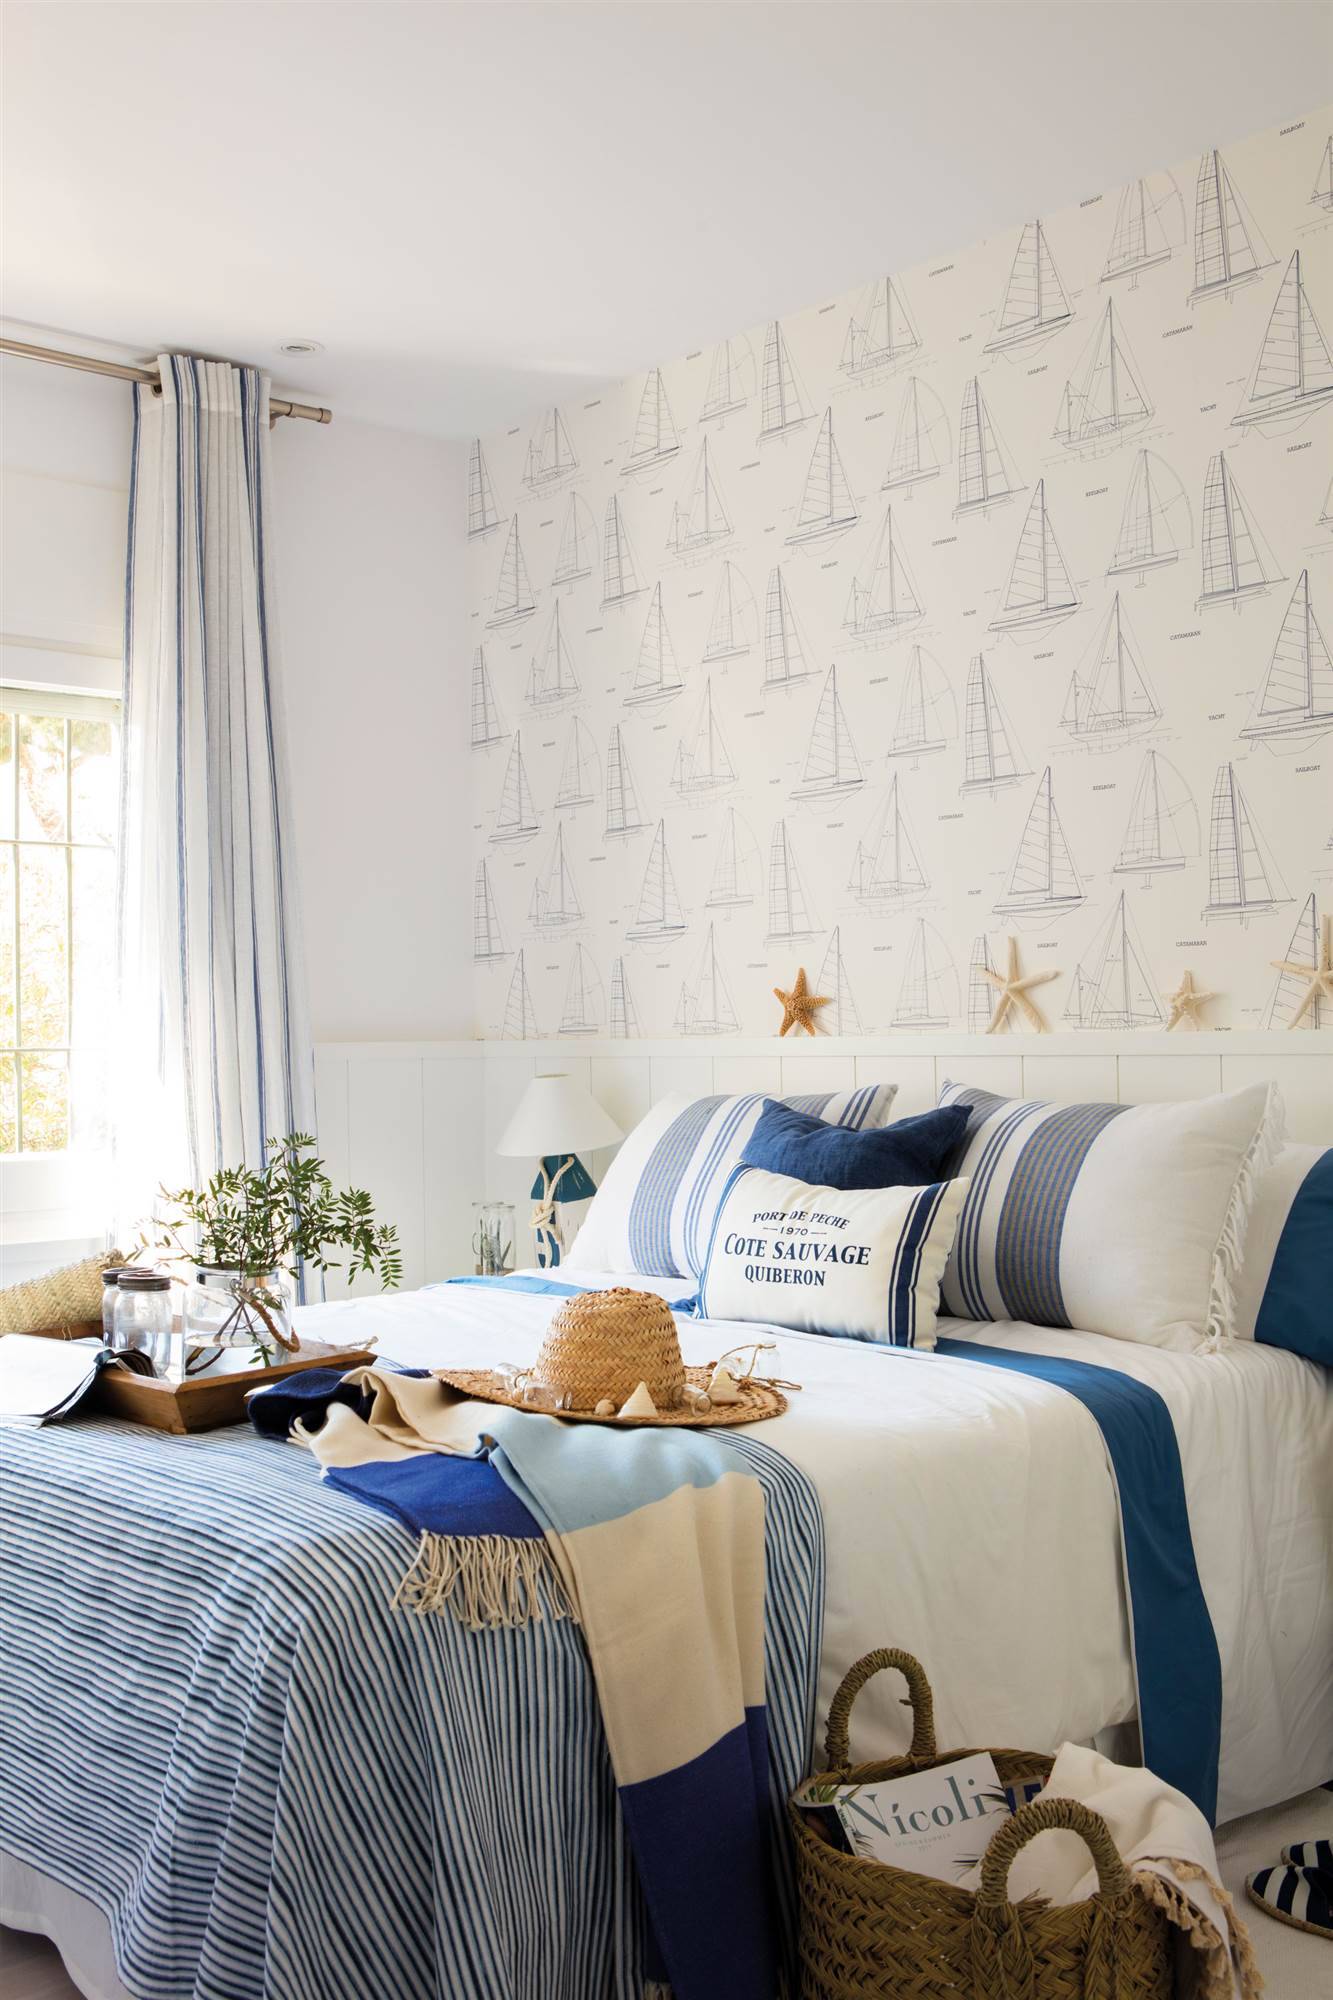 Dormitorio de apartamento de verano en blanco con papel pintado de barcos_00460587 